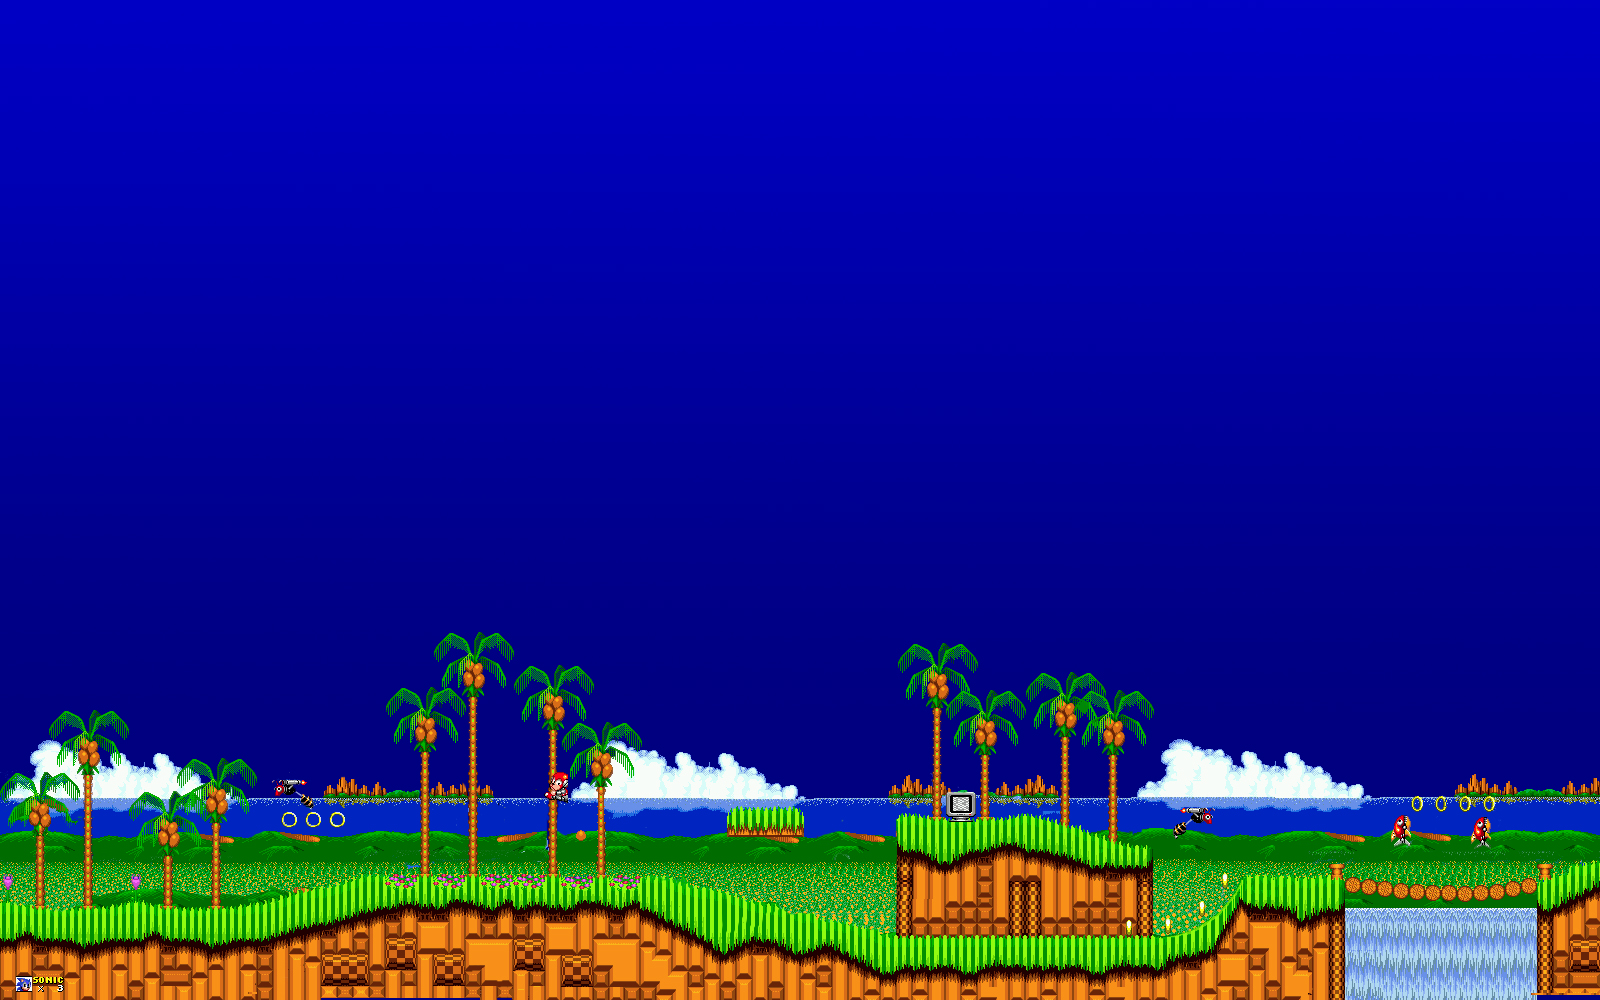 Sonic The Hedgehog Computer Wallpapers Desktop Backgrounds